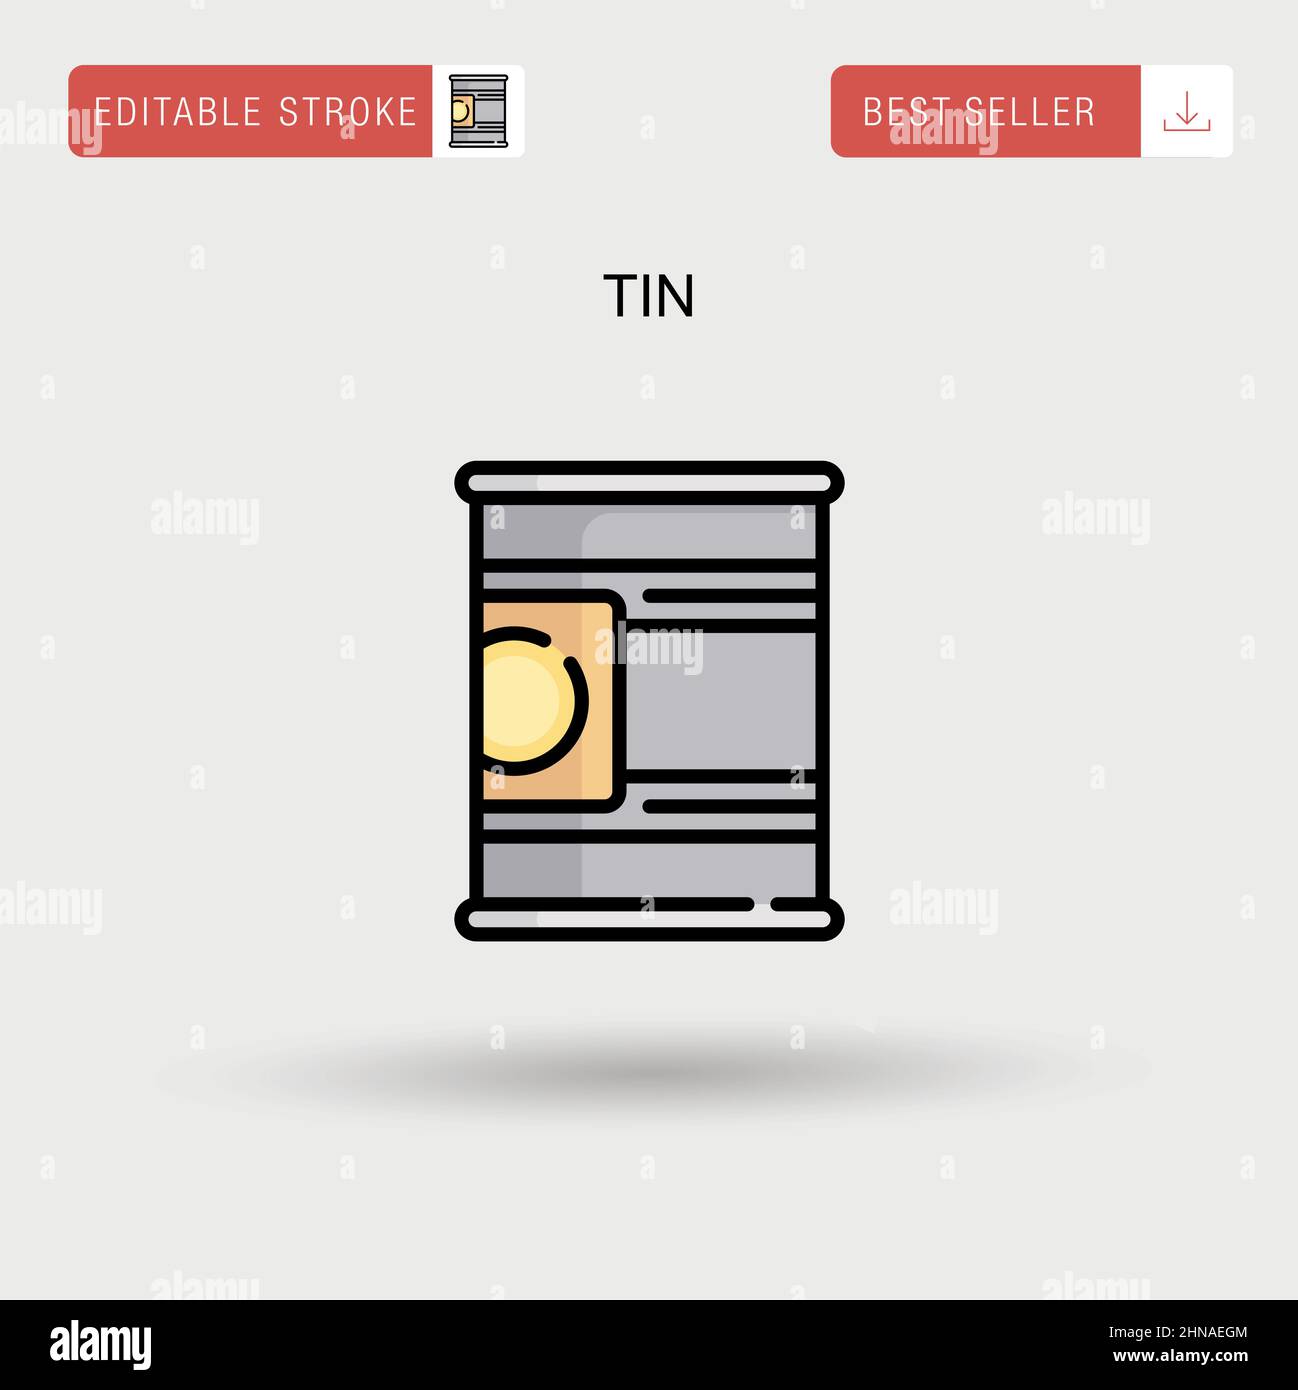 Tin Simple vector icon. Stock Vector